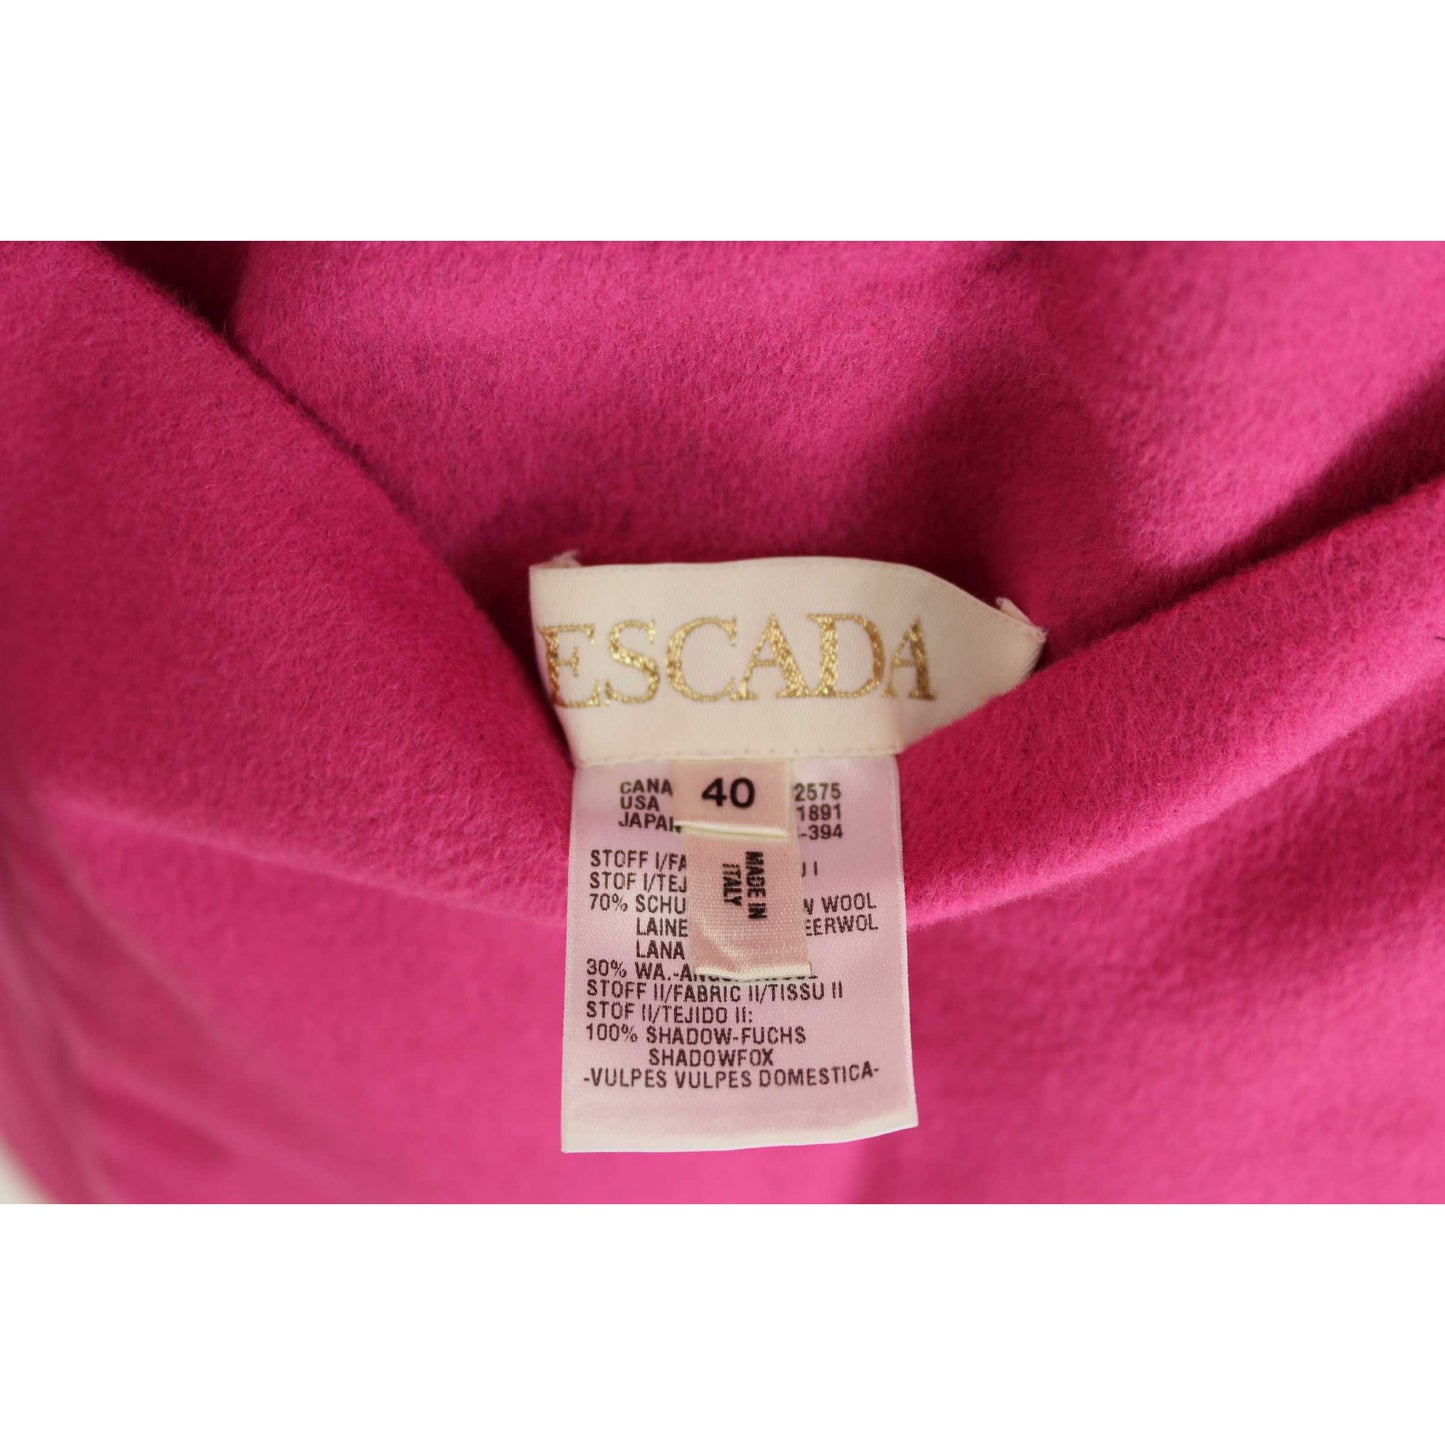 Escada Pink Black Vintage Fux For Coat